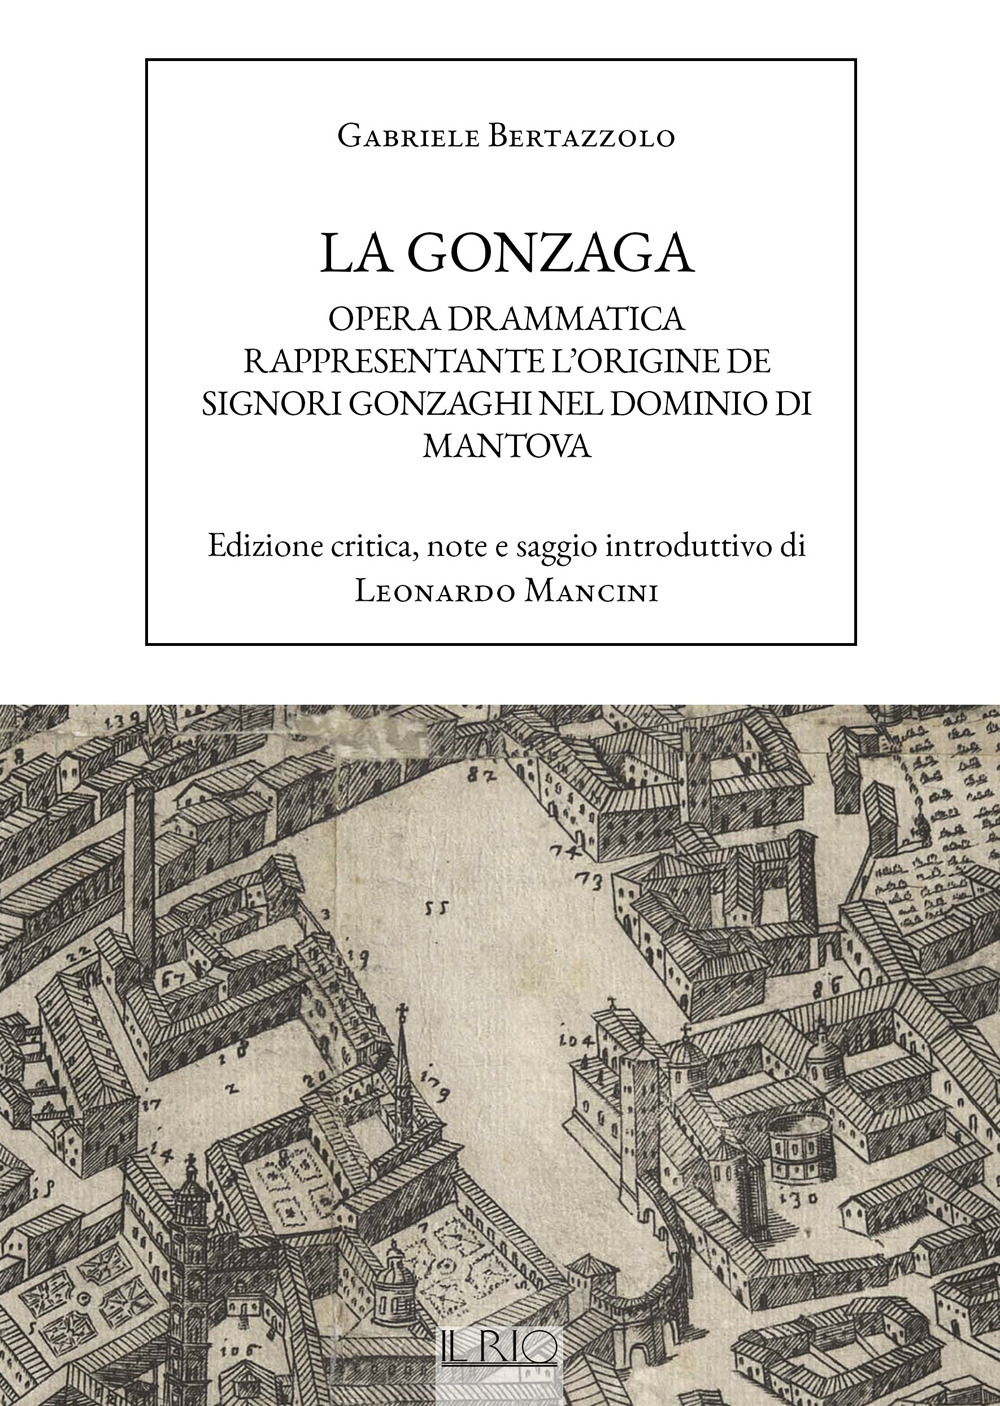 La Gonzaga. Opera drammatica rappresentante l'origine de Signori Gonzaghi nel dominio di Mantova